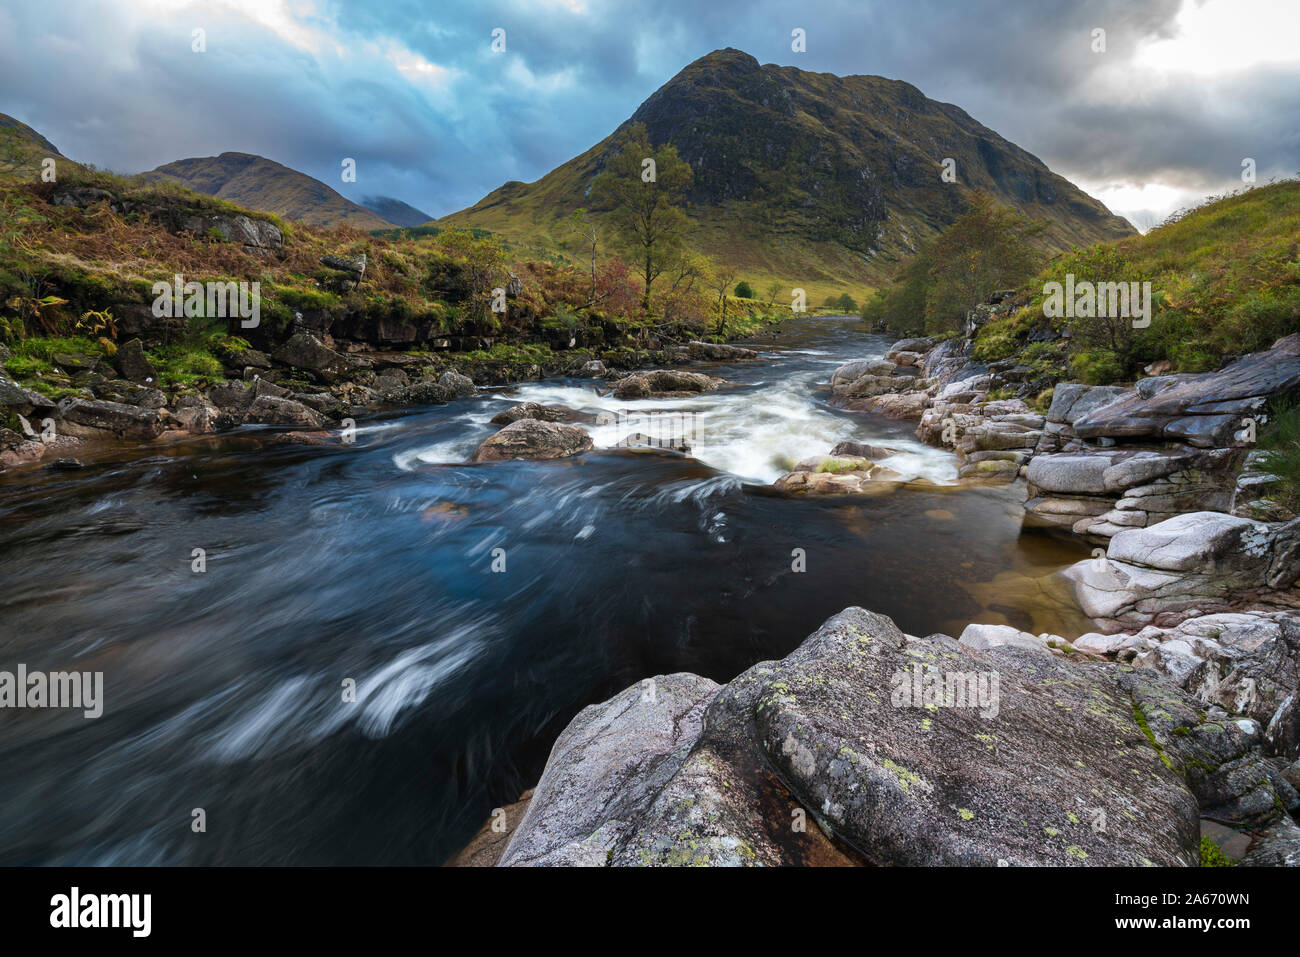 Etive rivière ruisseau coule à travers les roches de Glen Coe, région des Highlands, Ecosse, Royaume-Uni Banque D'Images